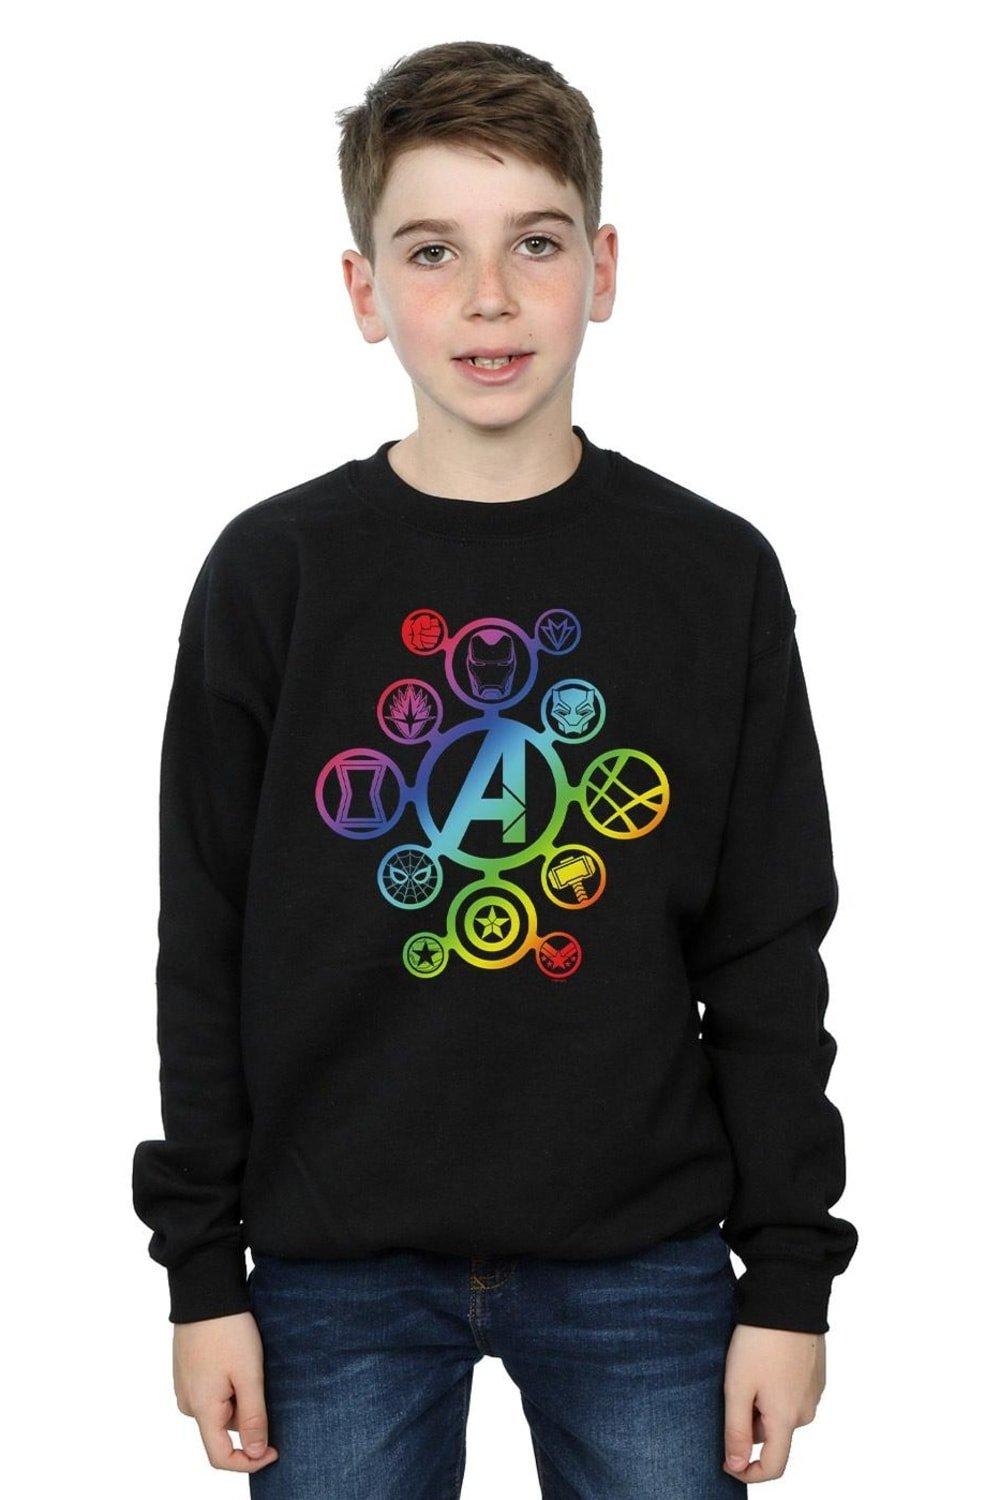 Avengers Infinity War Rainbow Icons Sweatshirt